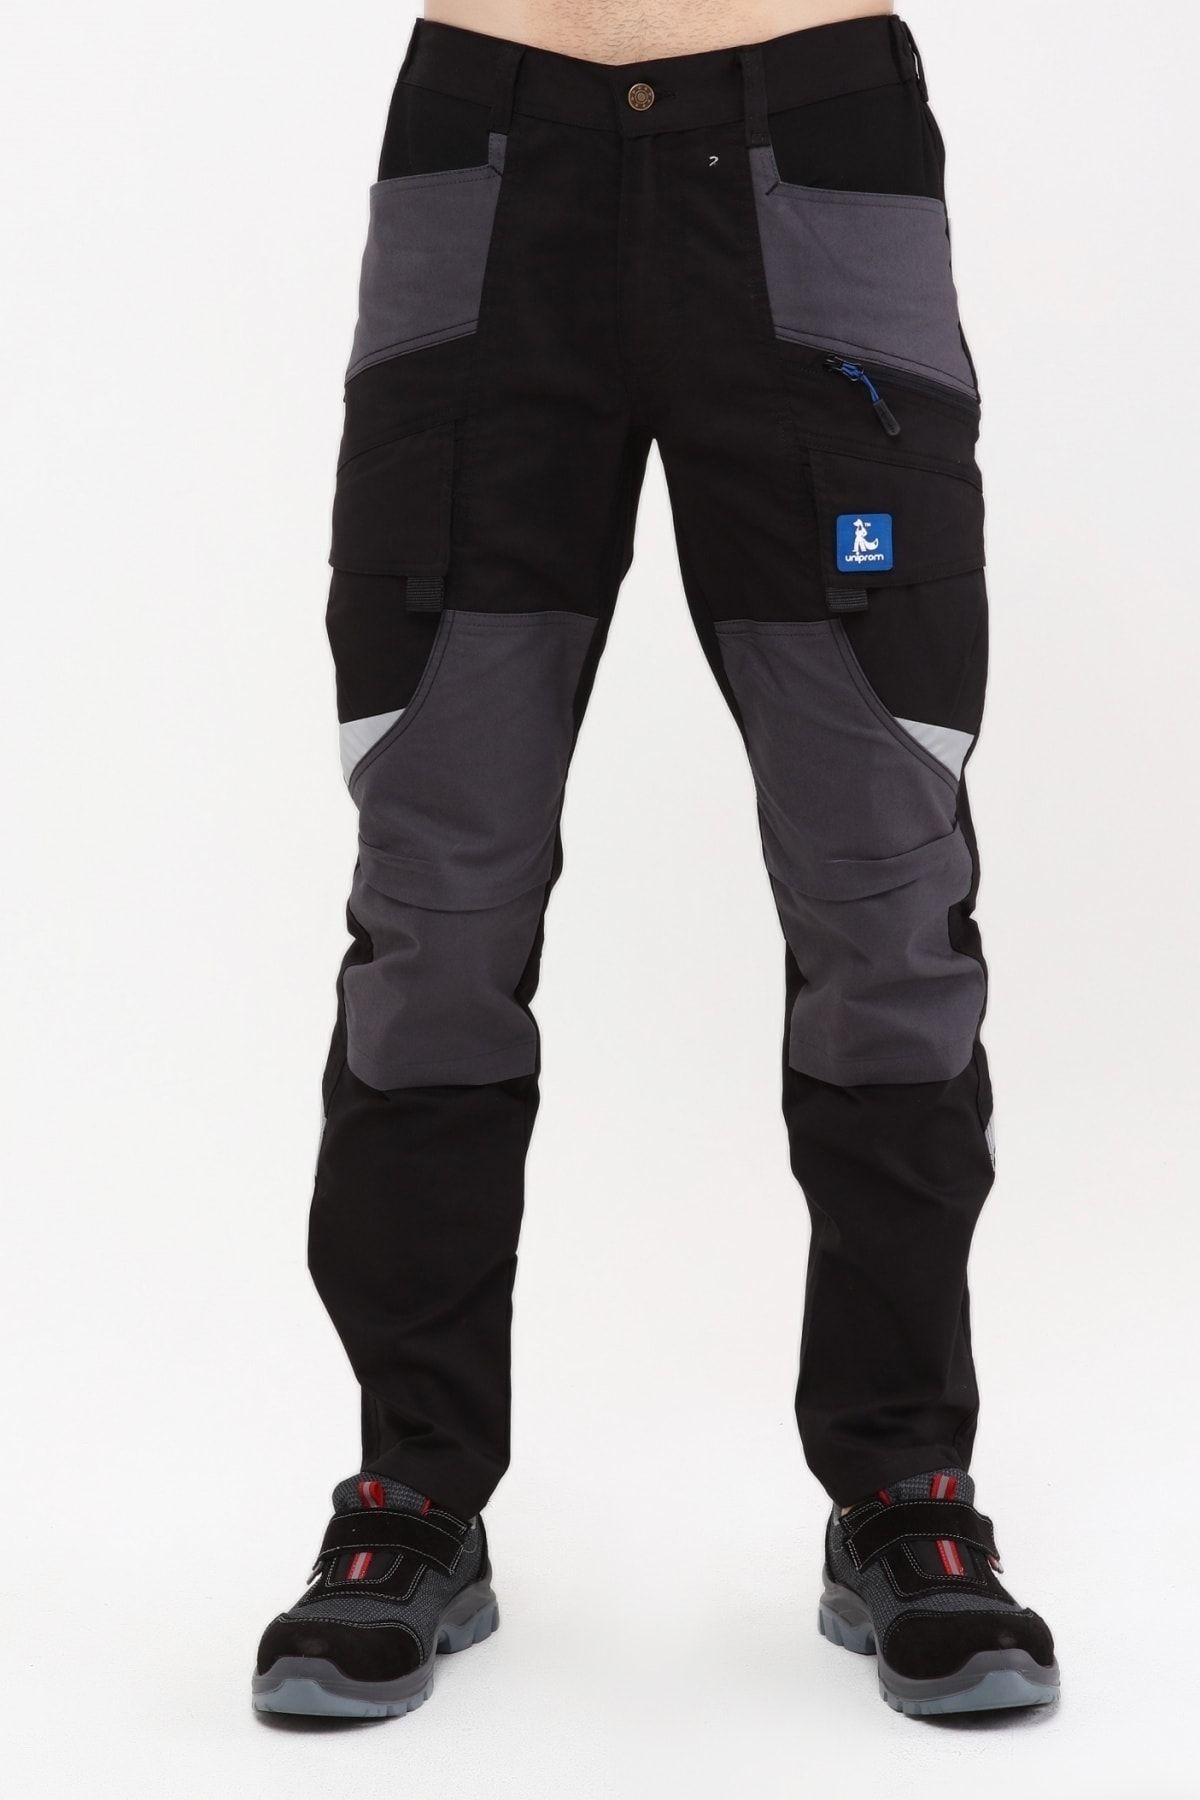 Uniprom İş Pantolonu Madrid Model 10 Cepli Full Likralı Diz Destekli Siyah